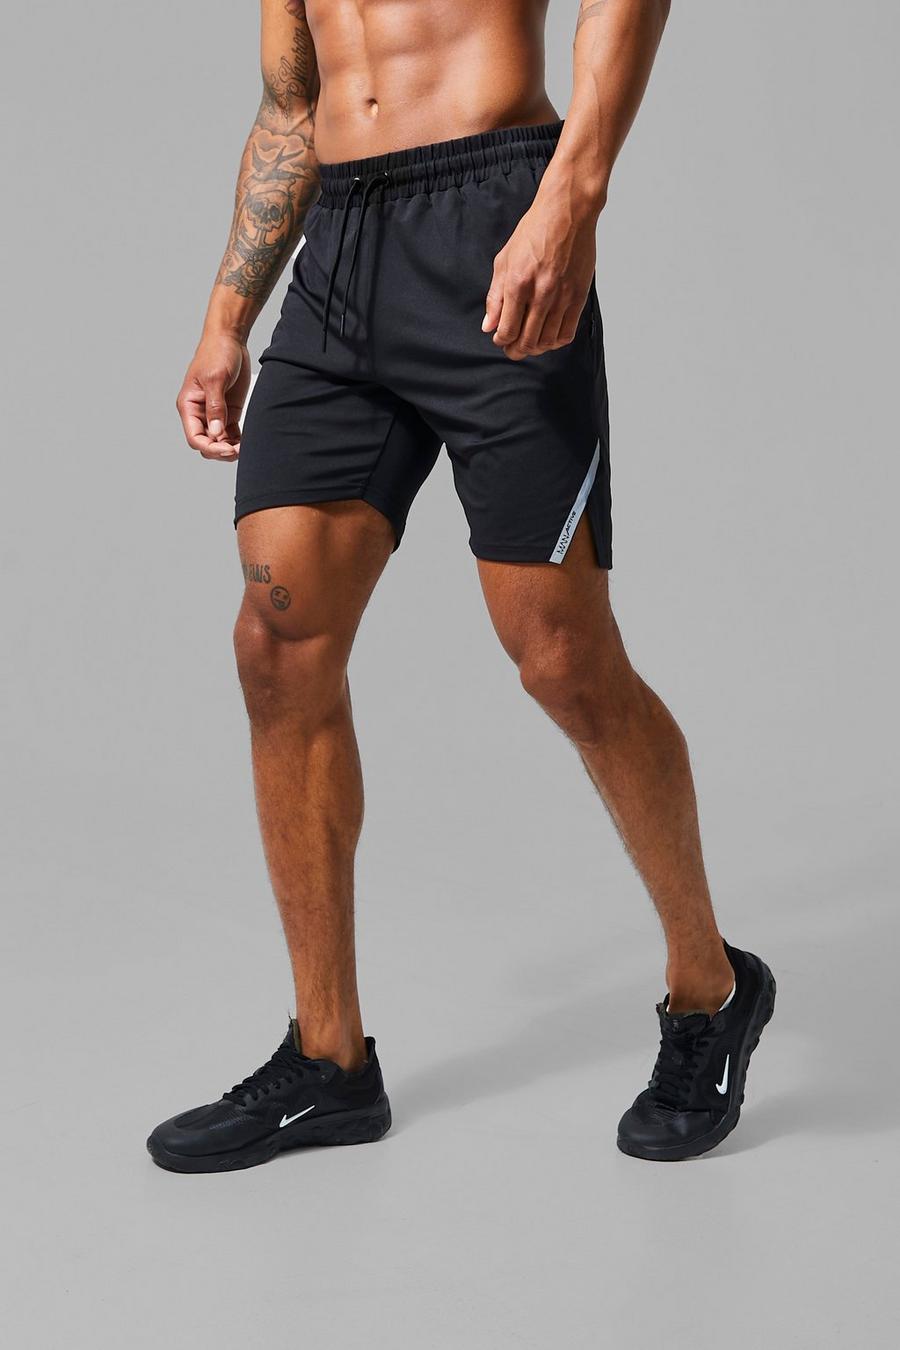 Pantaloncini Man Active riflettenti con spacco sul fondo, Black nero